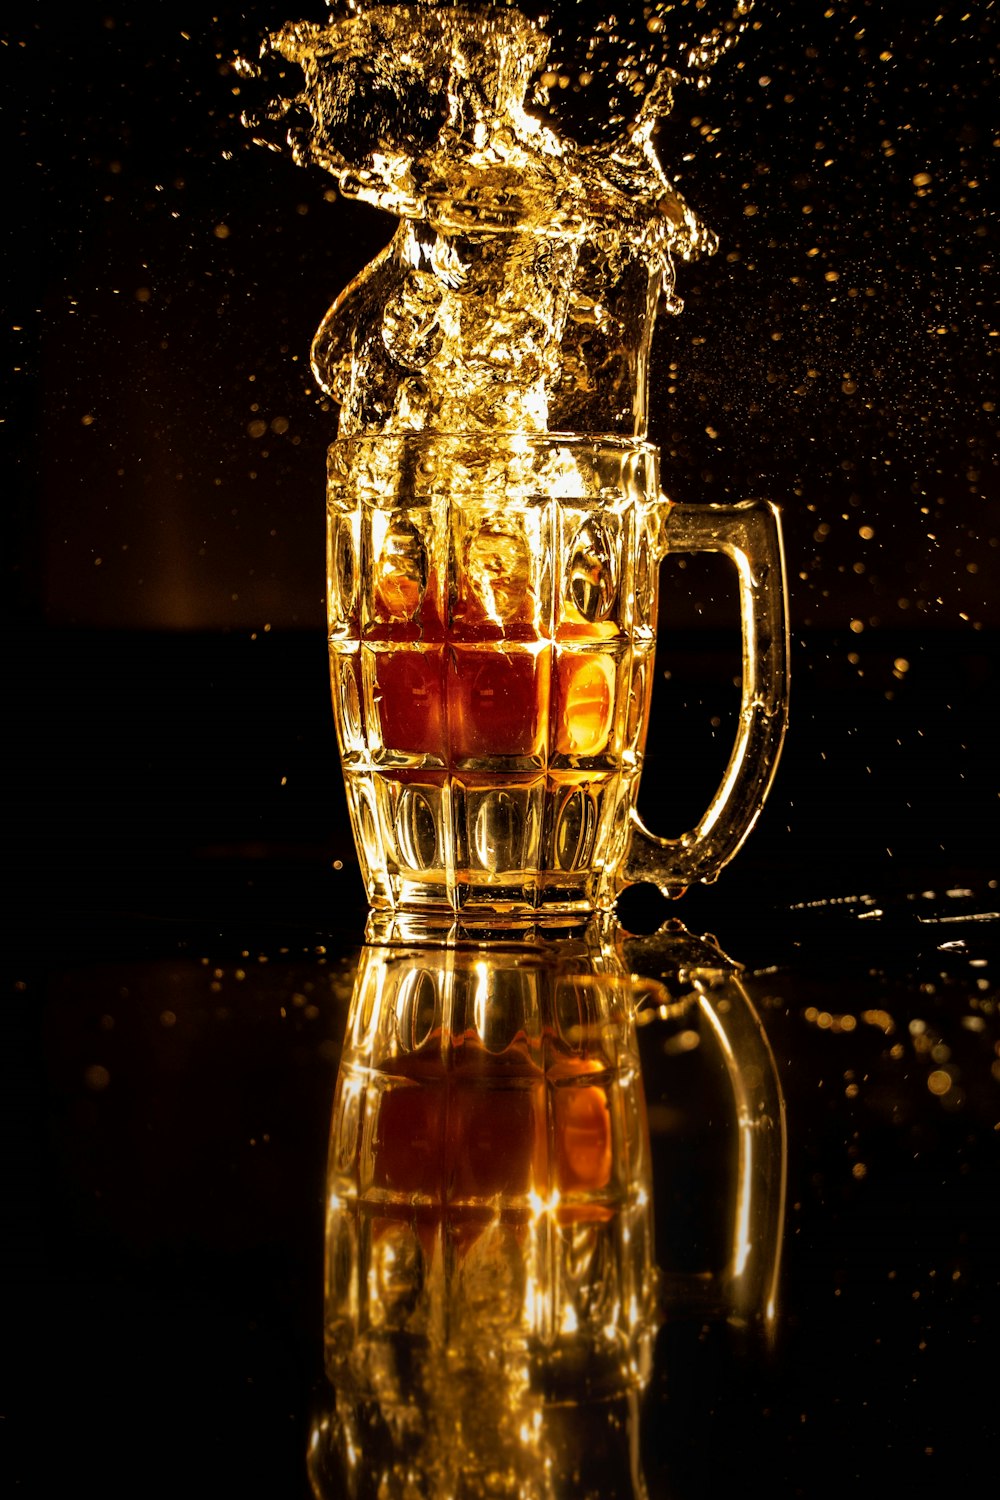 Tazza in vetro trasparente con liquido marrone